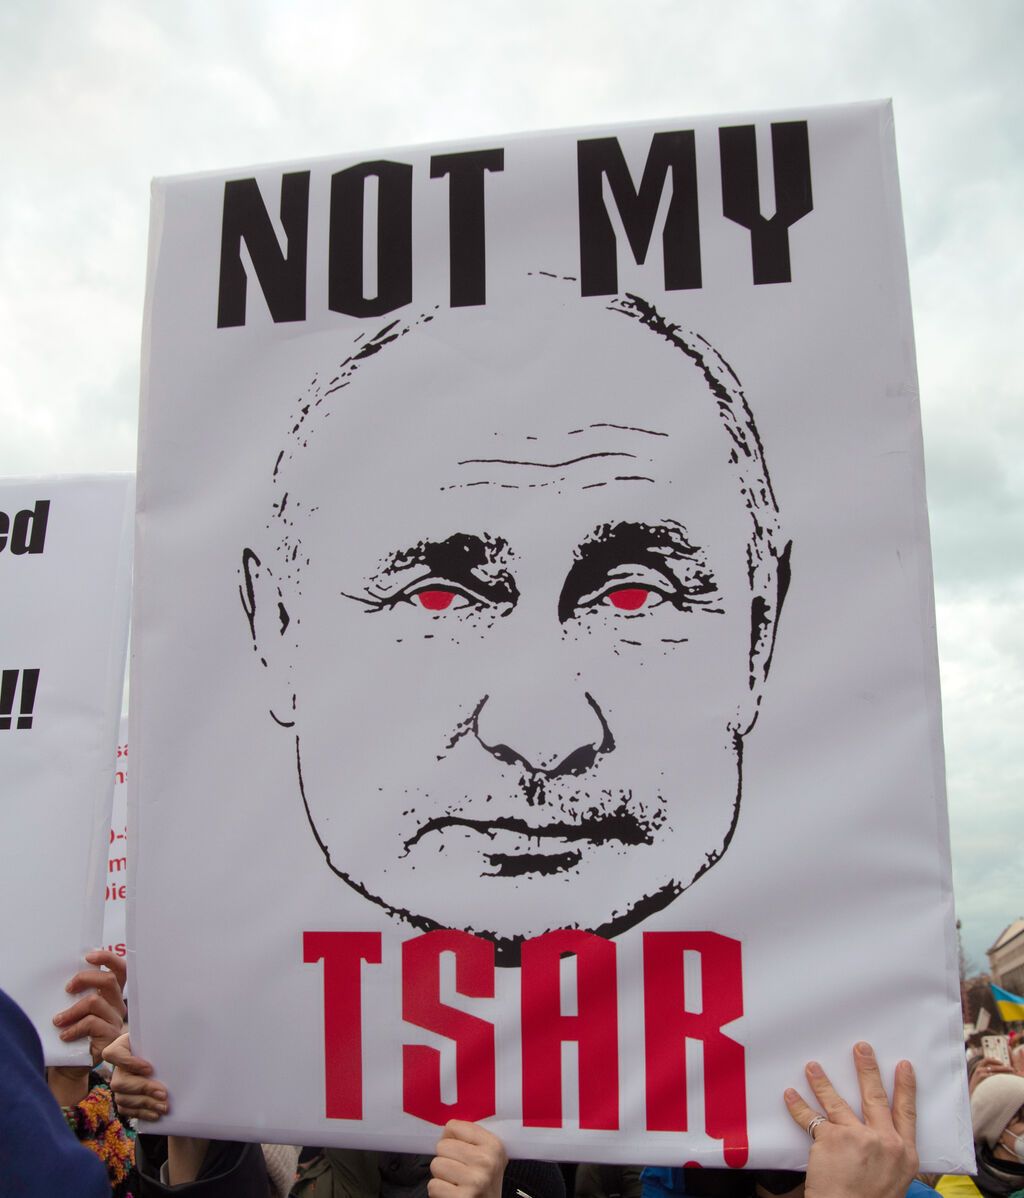 El objetivo de Putin: cambio de régimen y destrucción de Ucrania